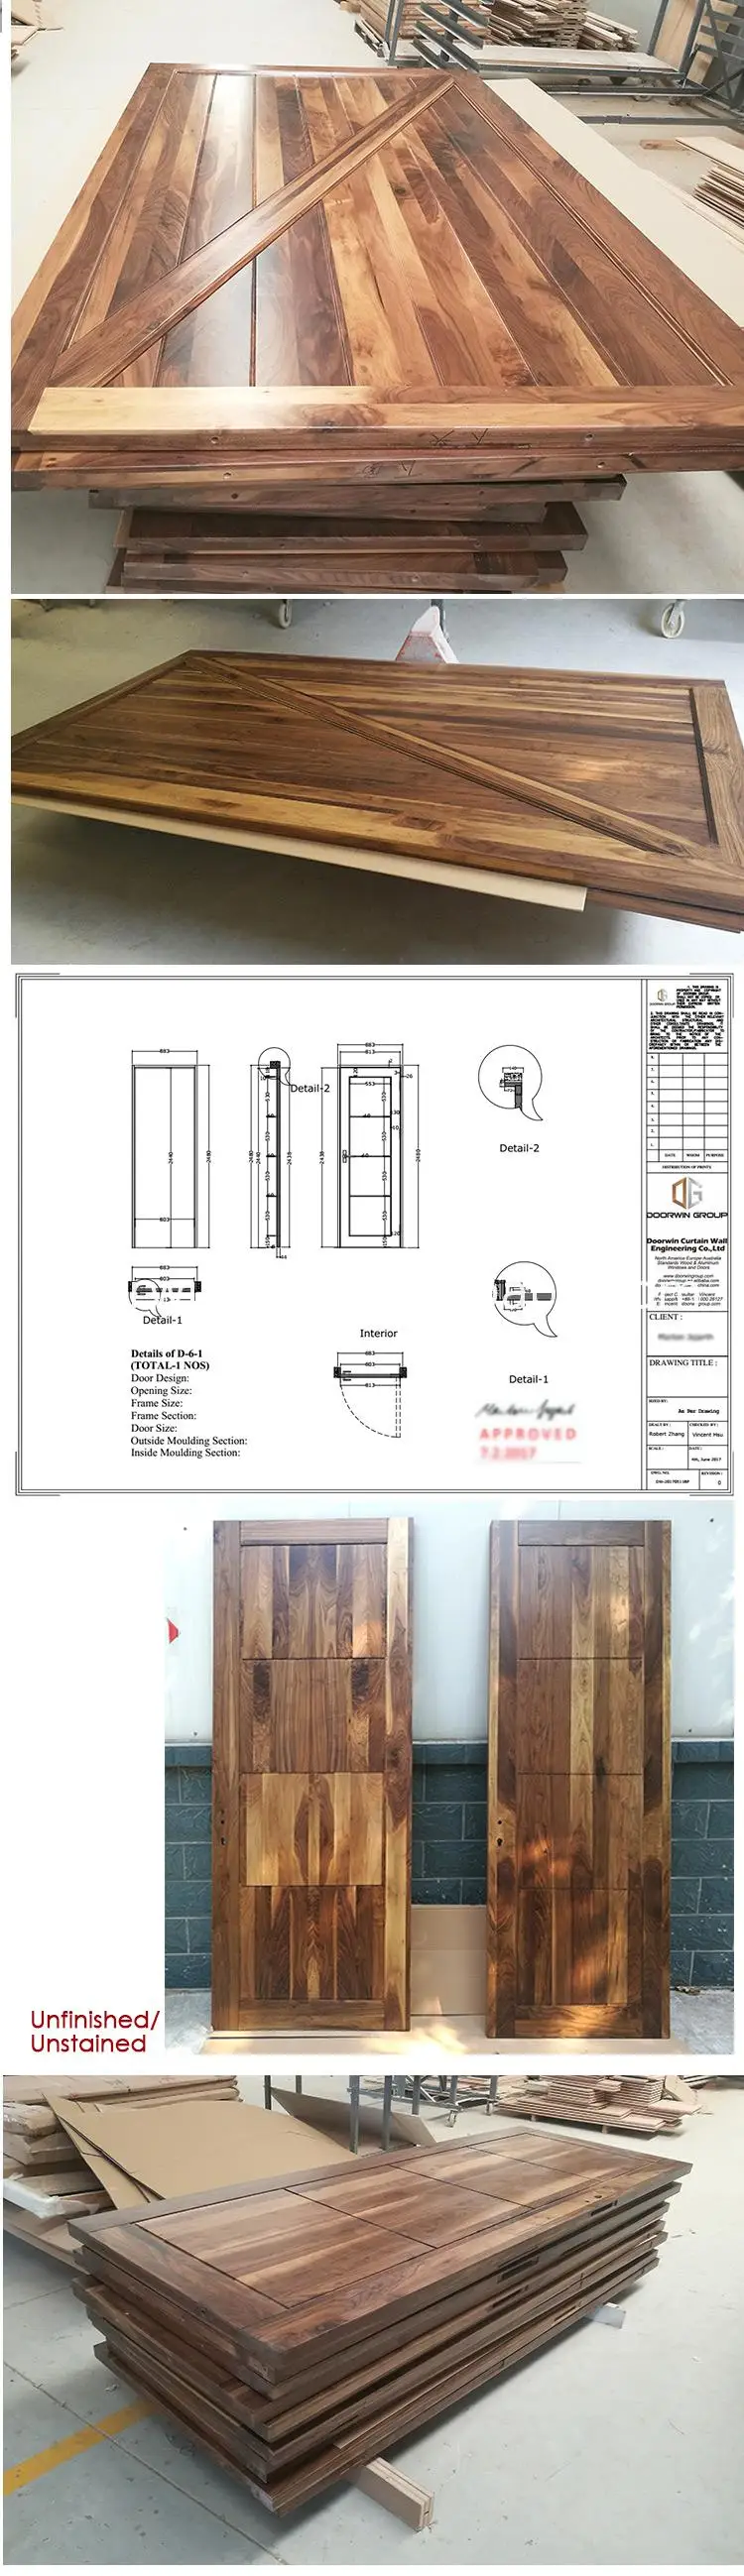 2017 new products italian design wooden doors front wood double door designs exterior